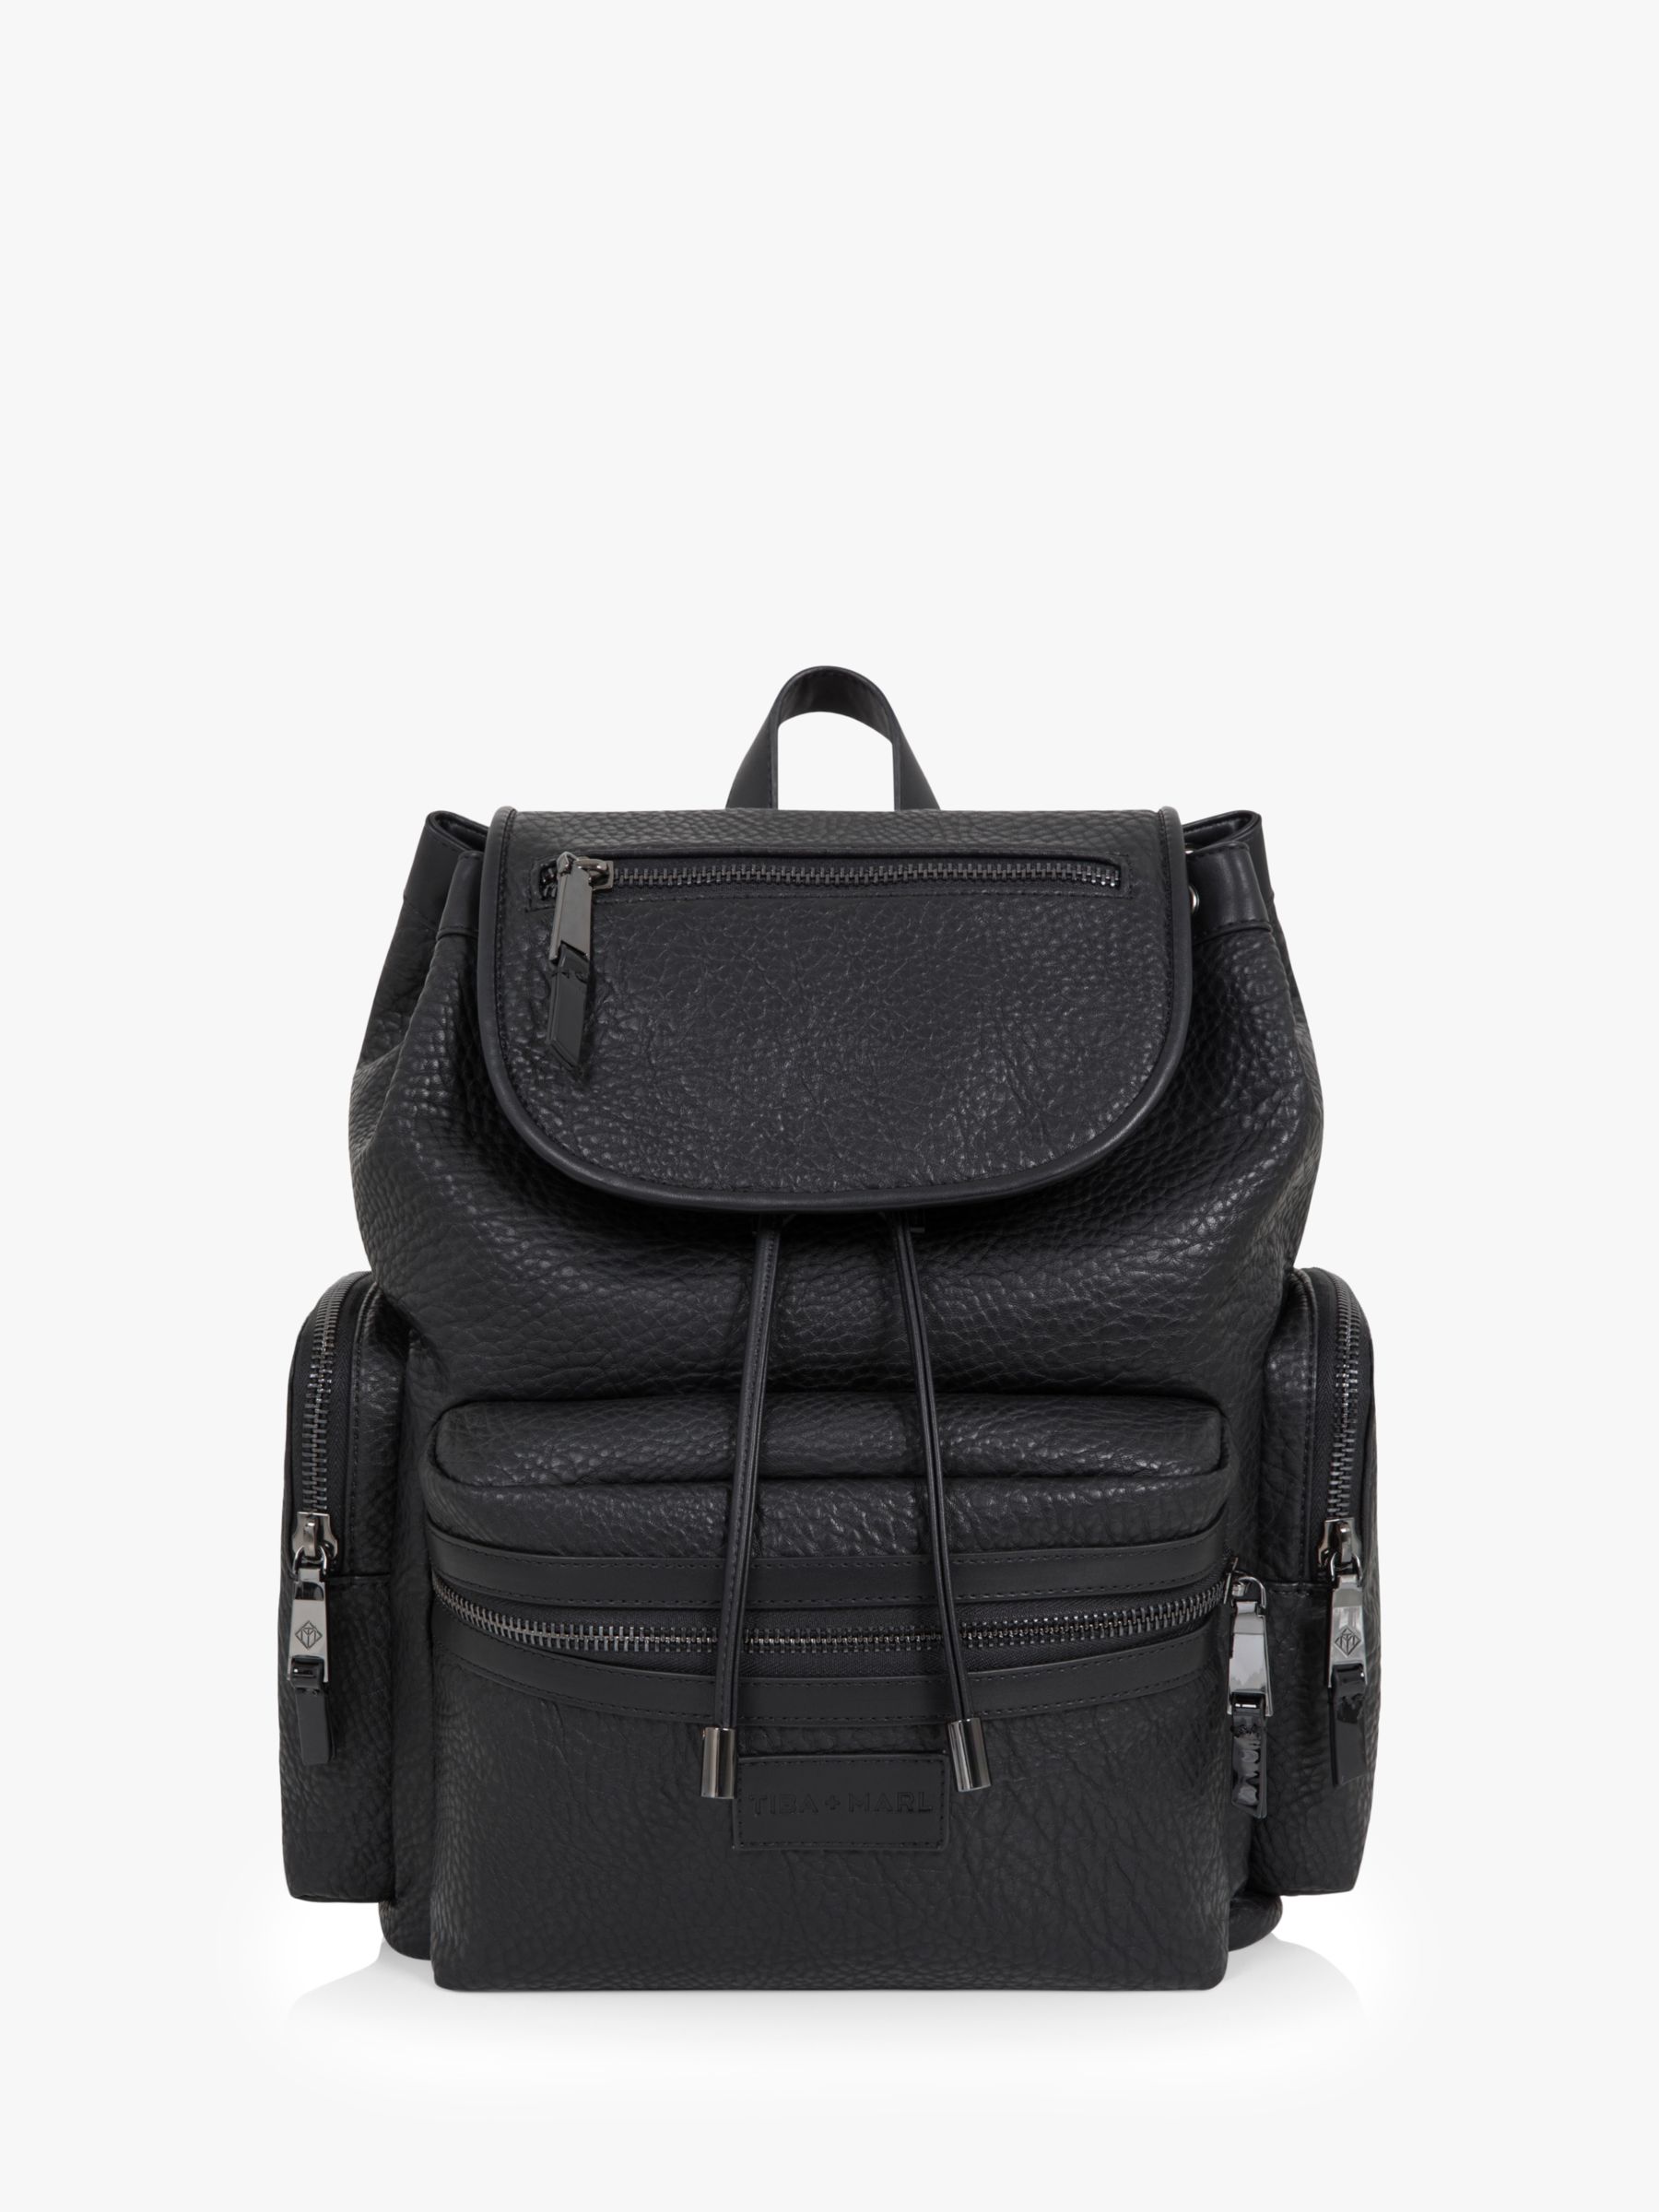 Tiba + Marl Kaspar Backpack Changing Bag, Black at John Lewis & Partners